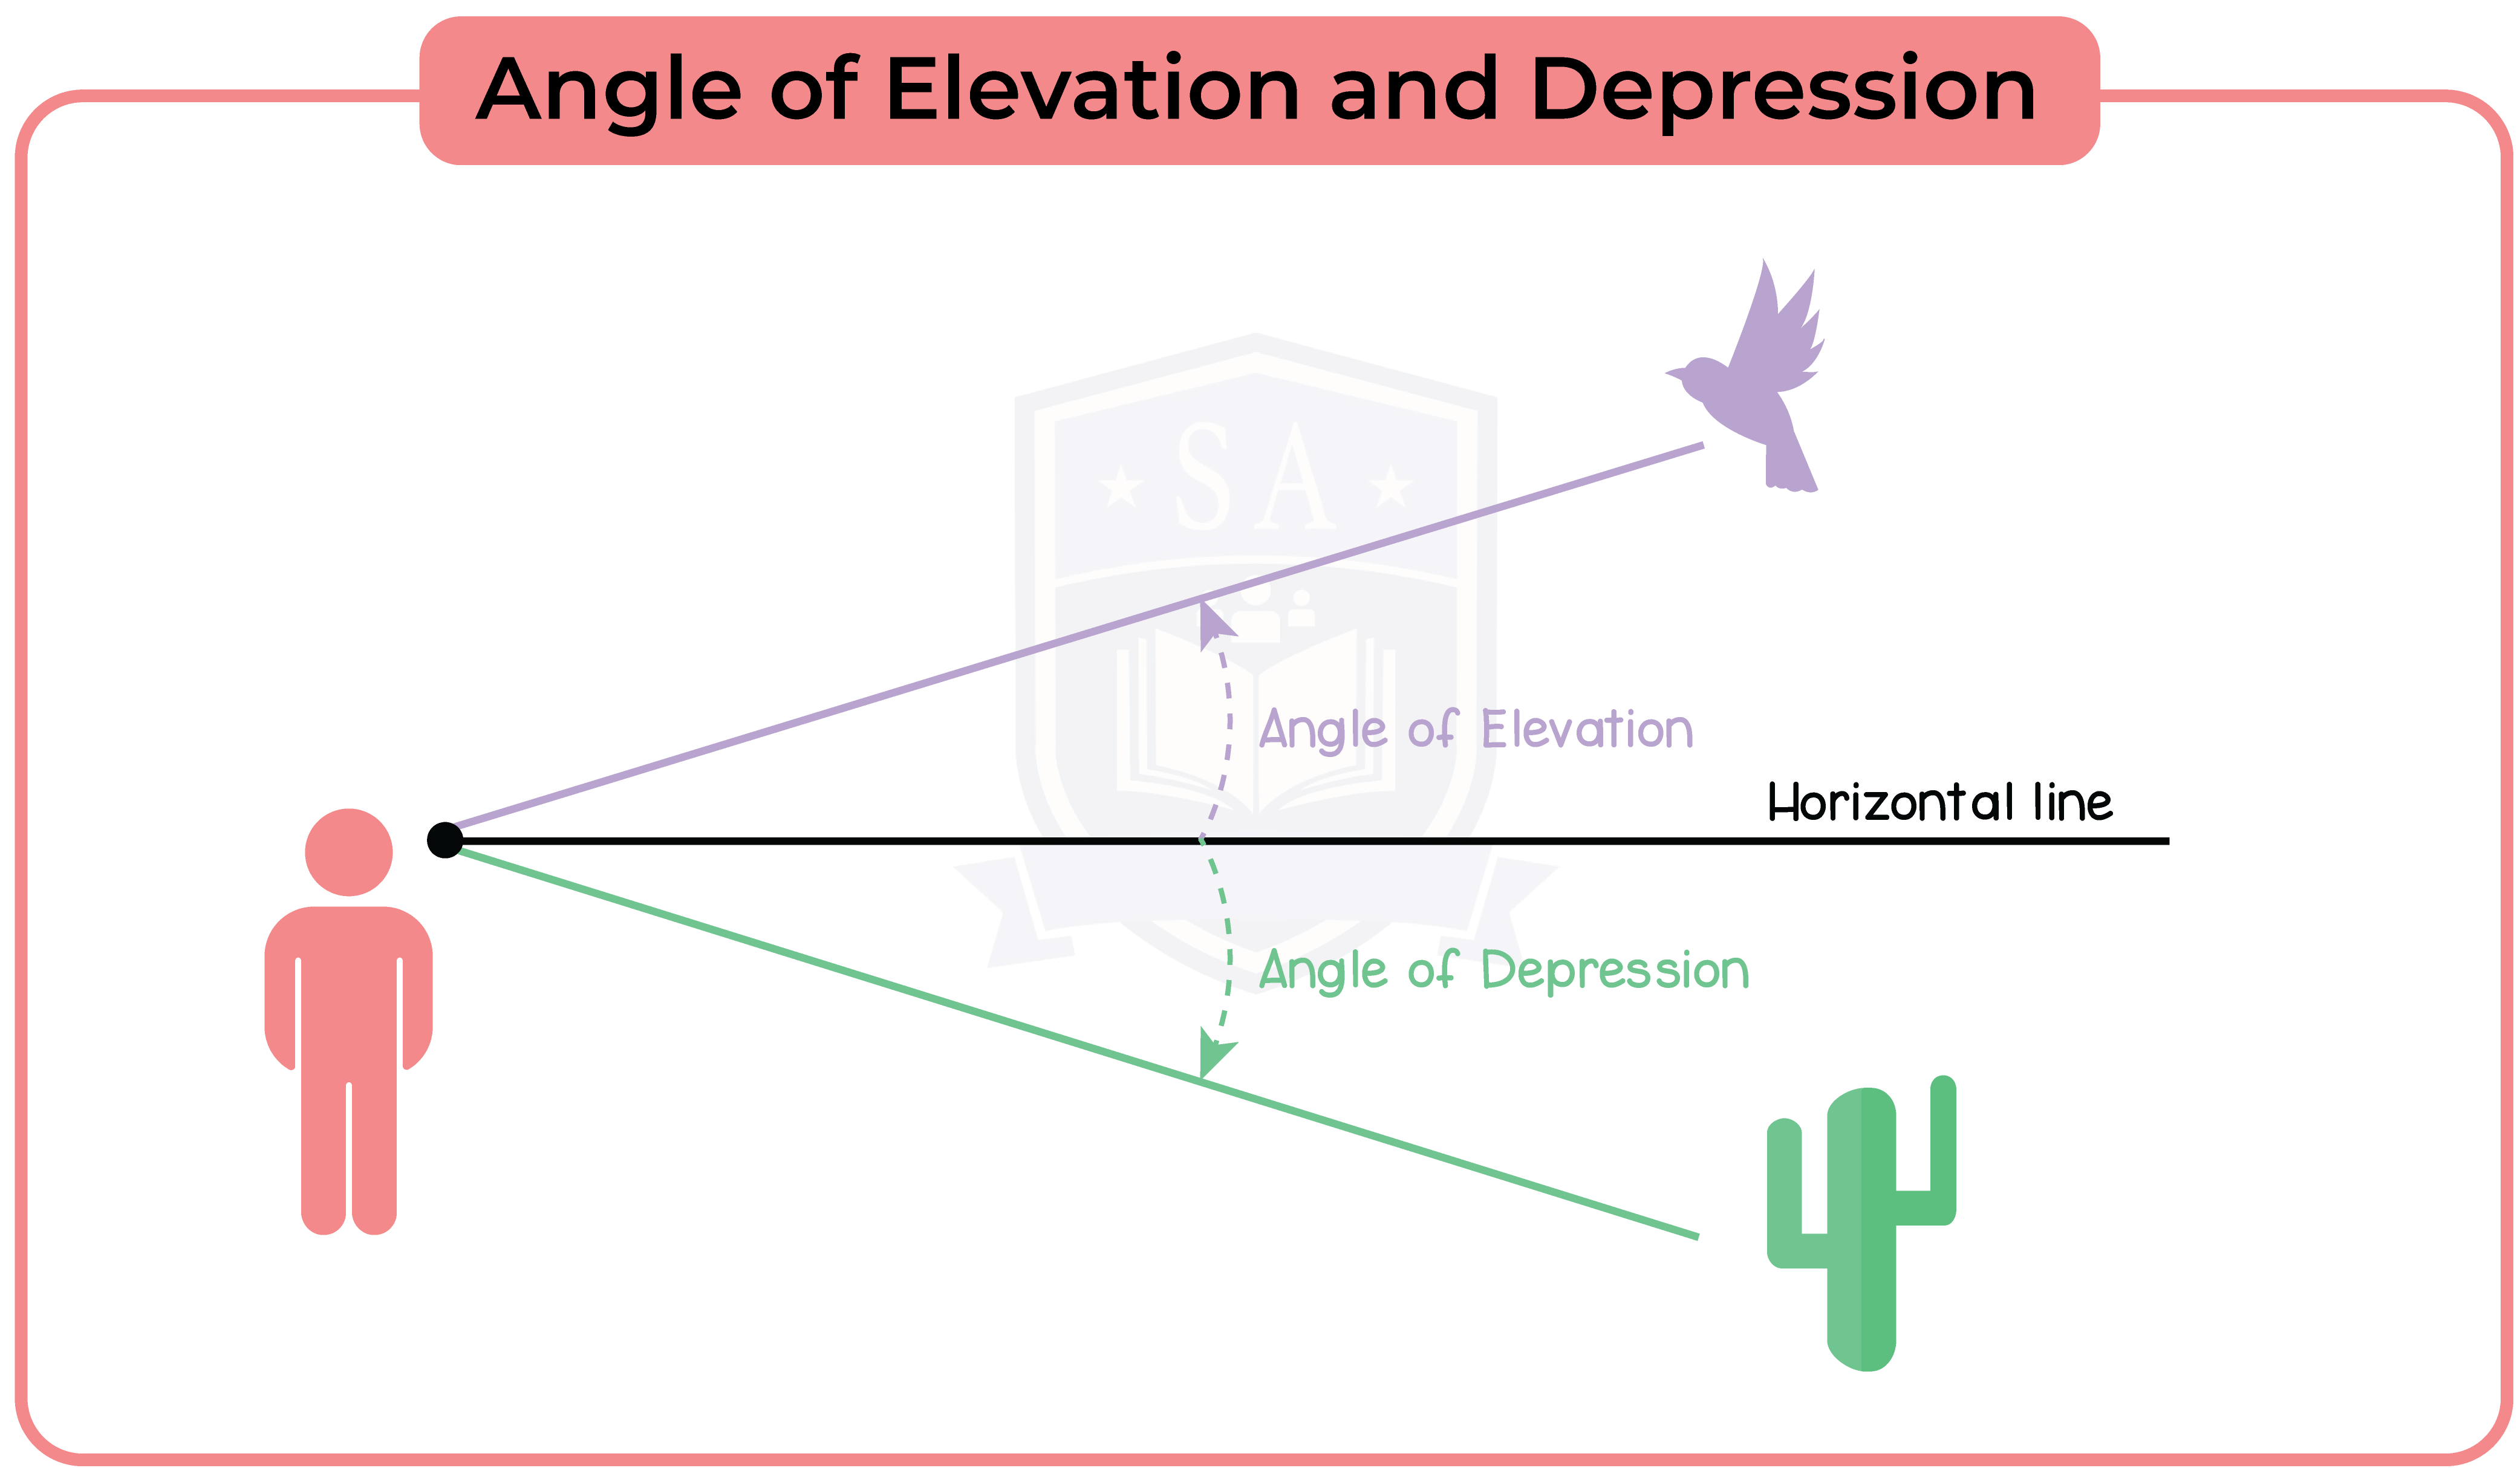 edexcel_igcse_mathematics a_topic 32_trigonomentry and pythagoras' theorem_002_Angle of Elevation and Depression